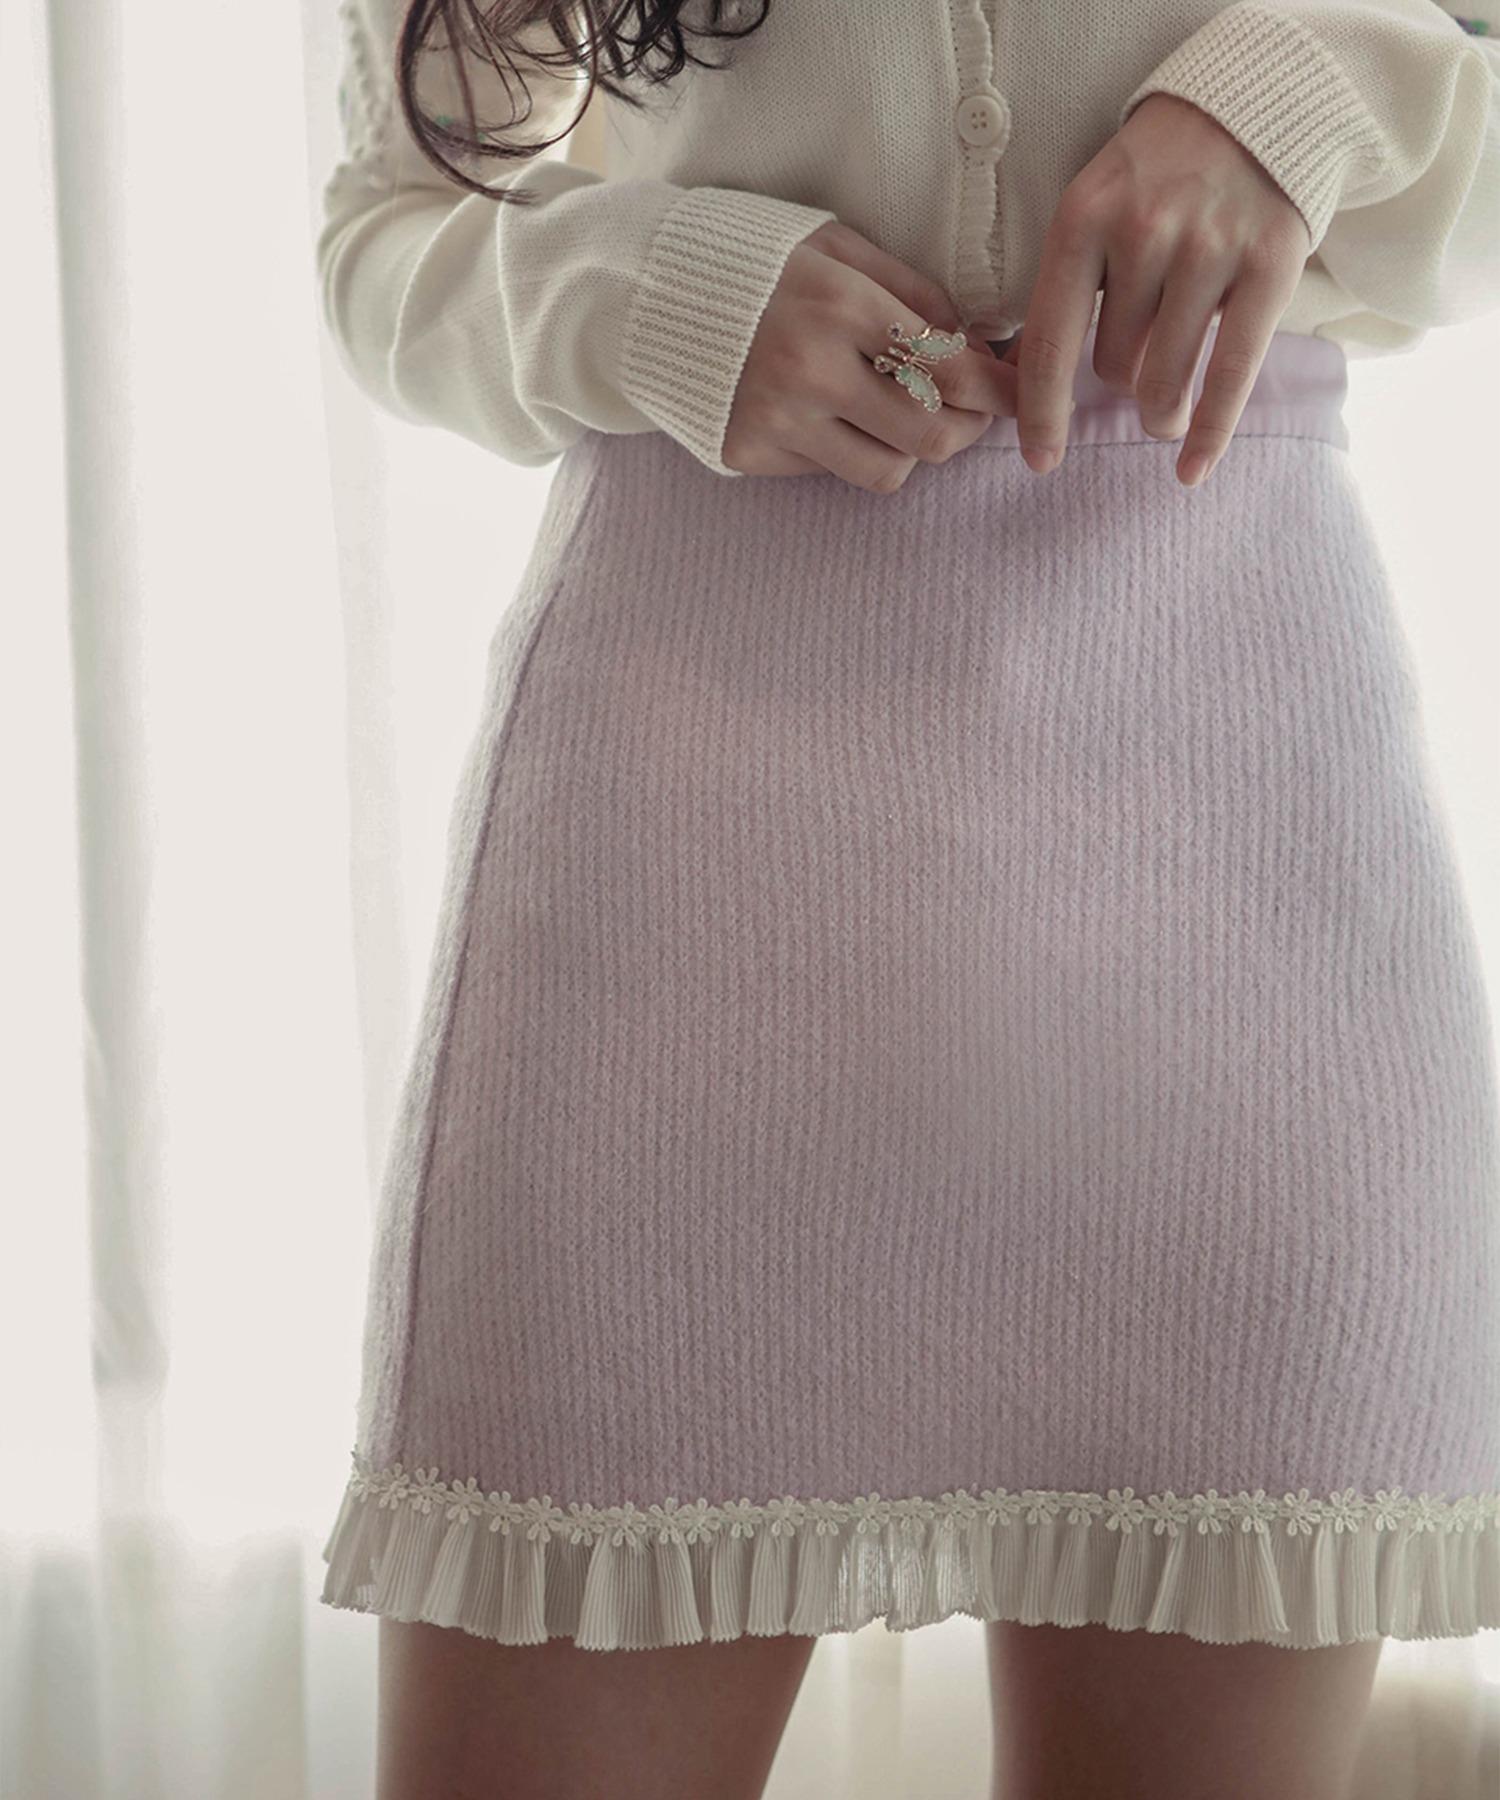 【まとめ買い】 １着でも送料無料 lissi Boutique フリル刺繍リブニットスカート